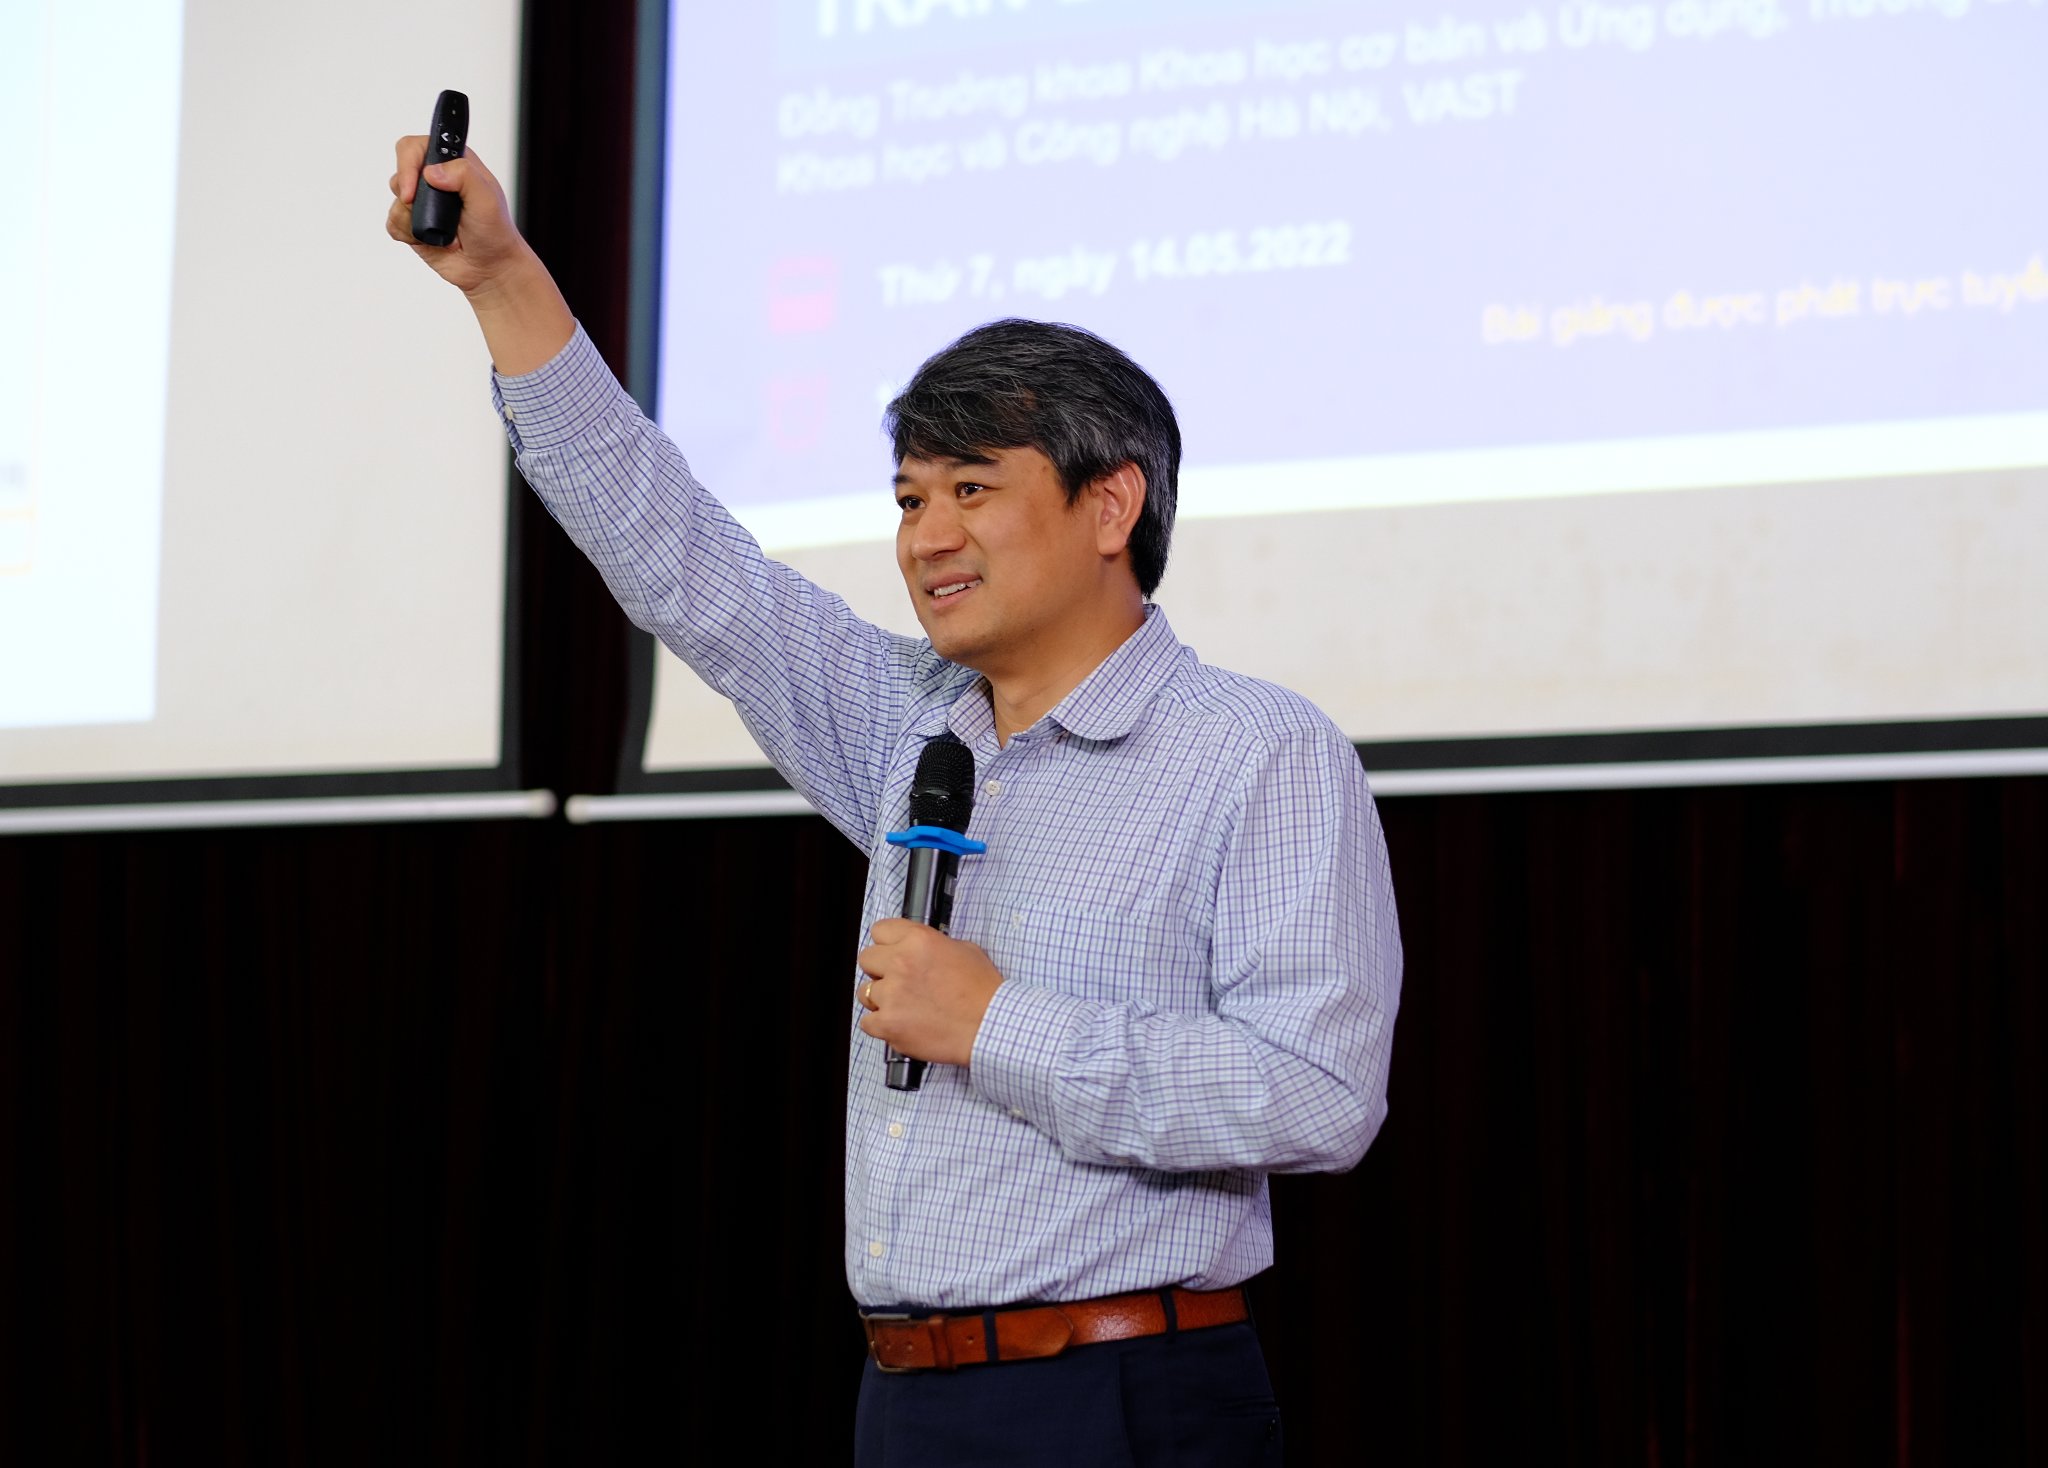 PGS.TS. Trần Đình Phong, Trưởng khoa Khoa học cơ bản và Ứng dụng, Trường Đại học Khoa học và Công nghệ Hà Nội trình bày báo cáo tại Hội thảo